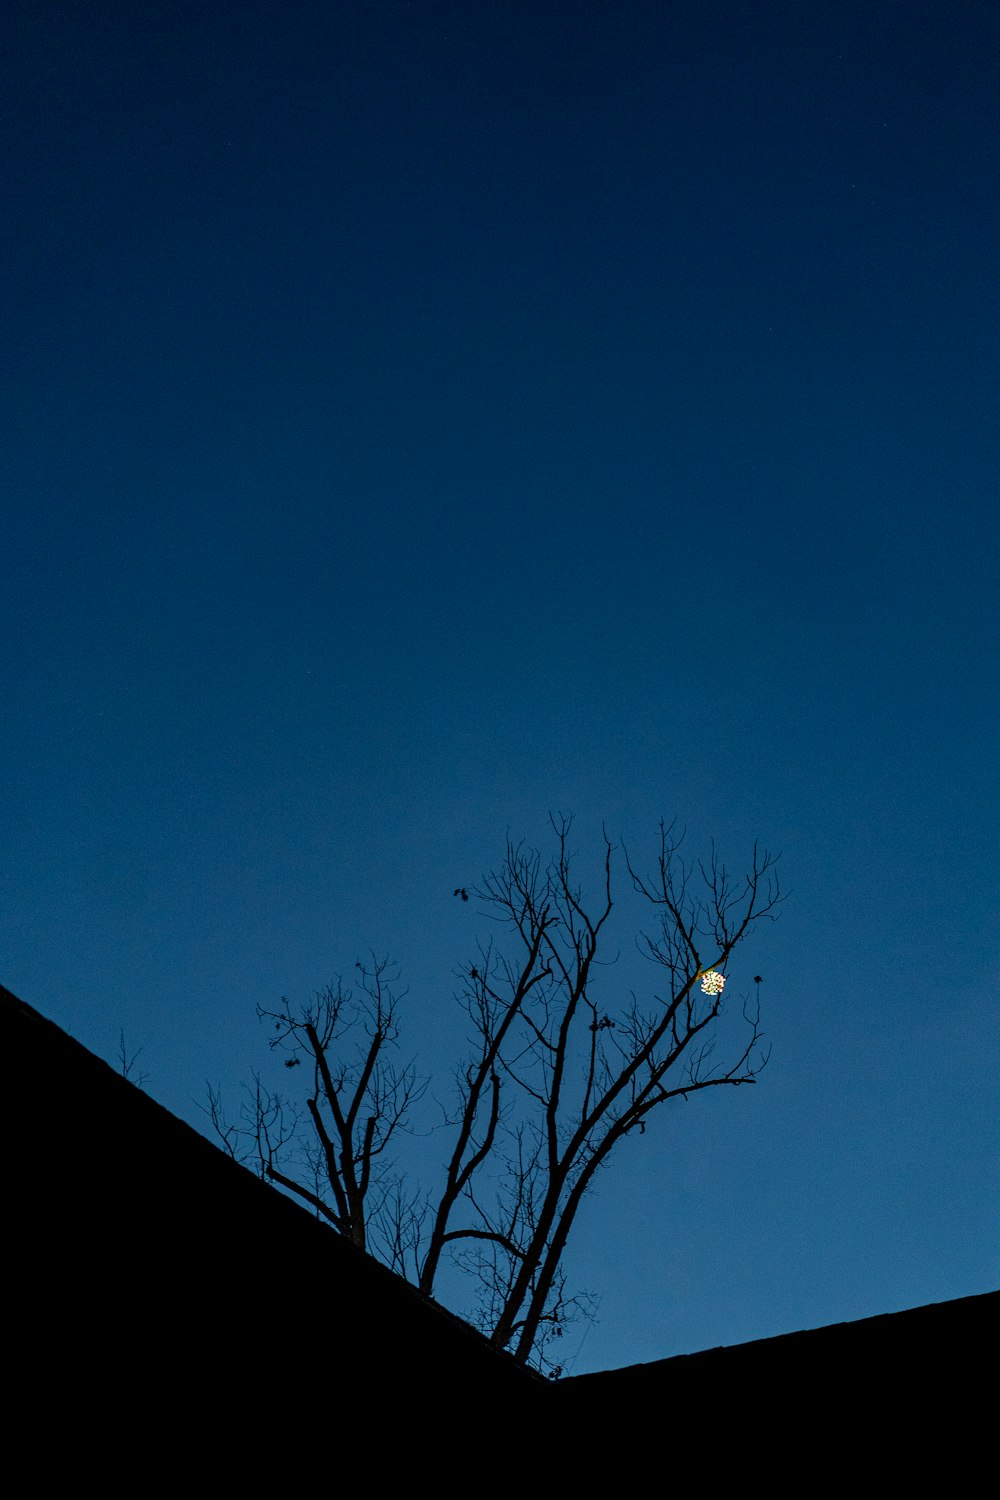 albero spoglio sotto il cielo blu durante il giorno